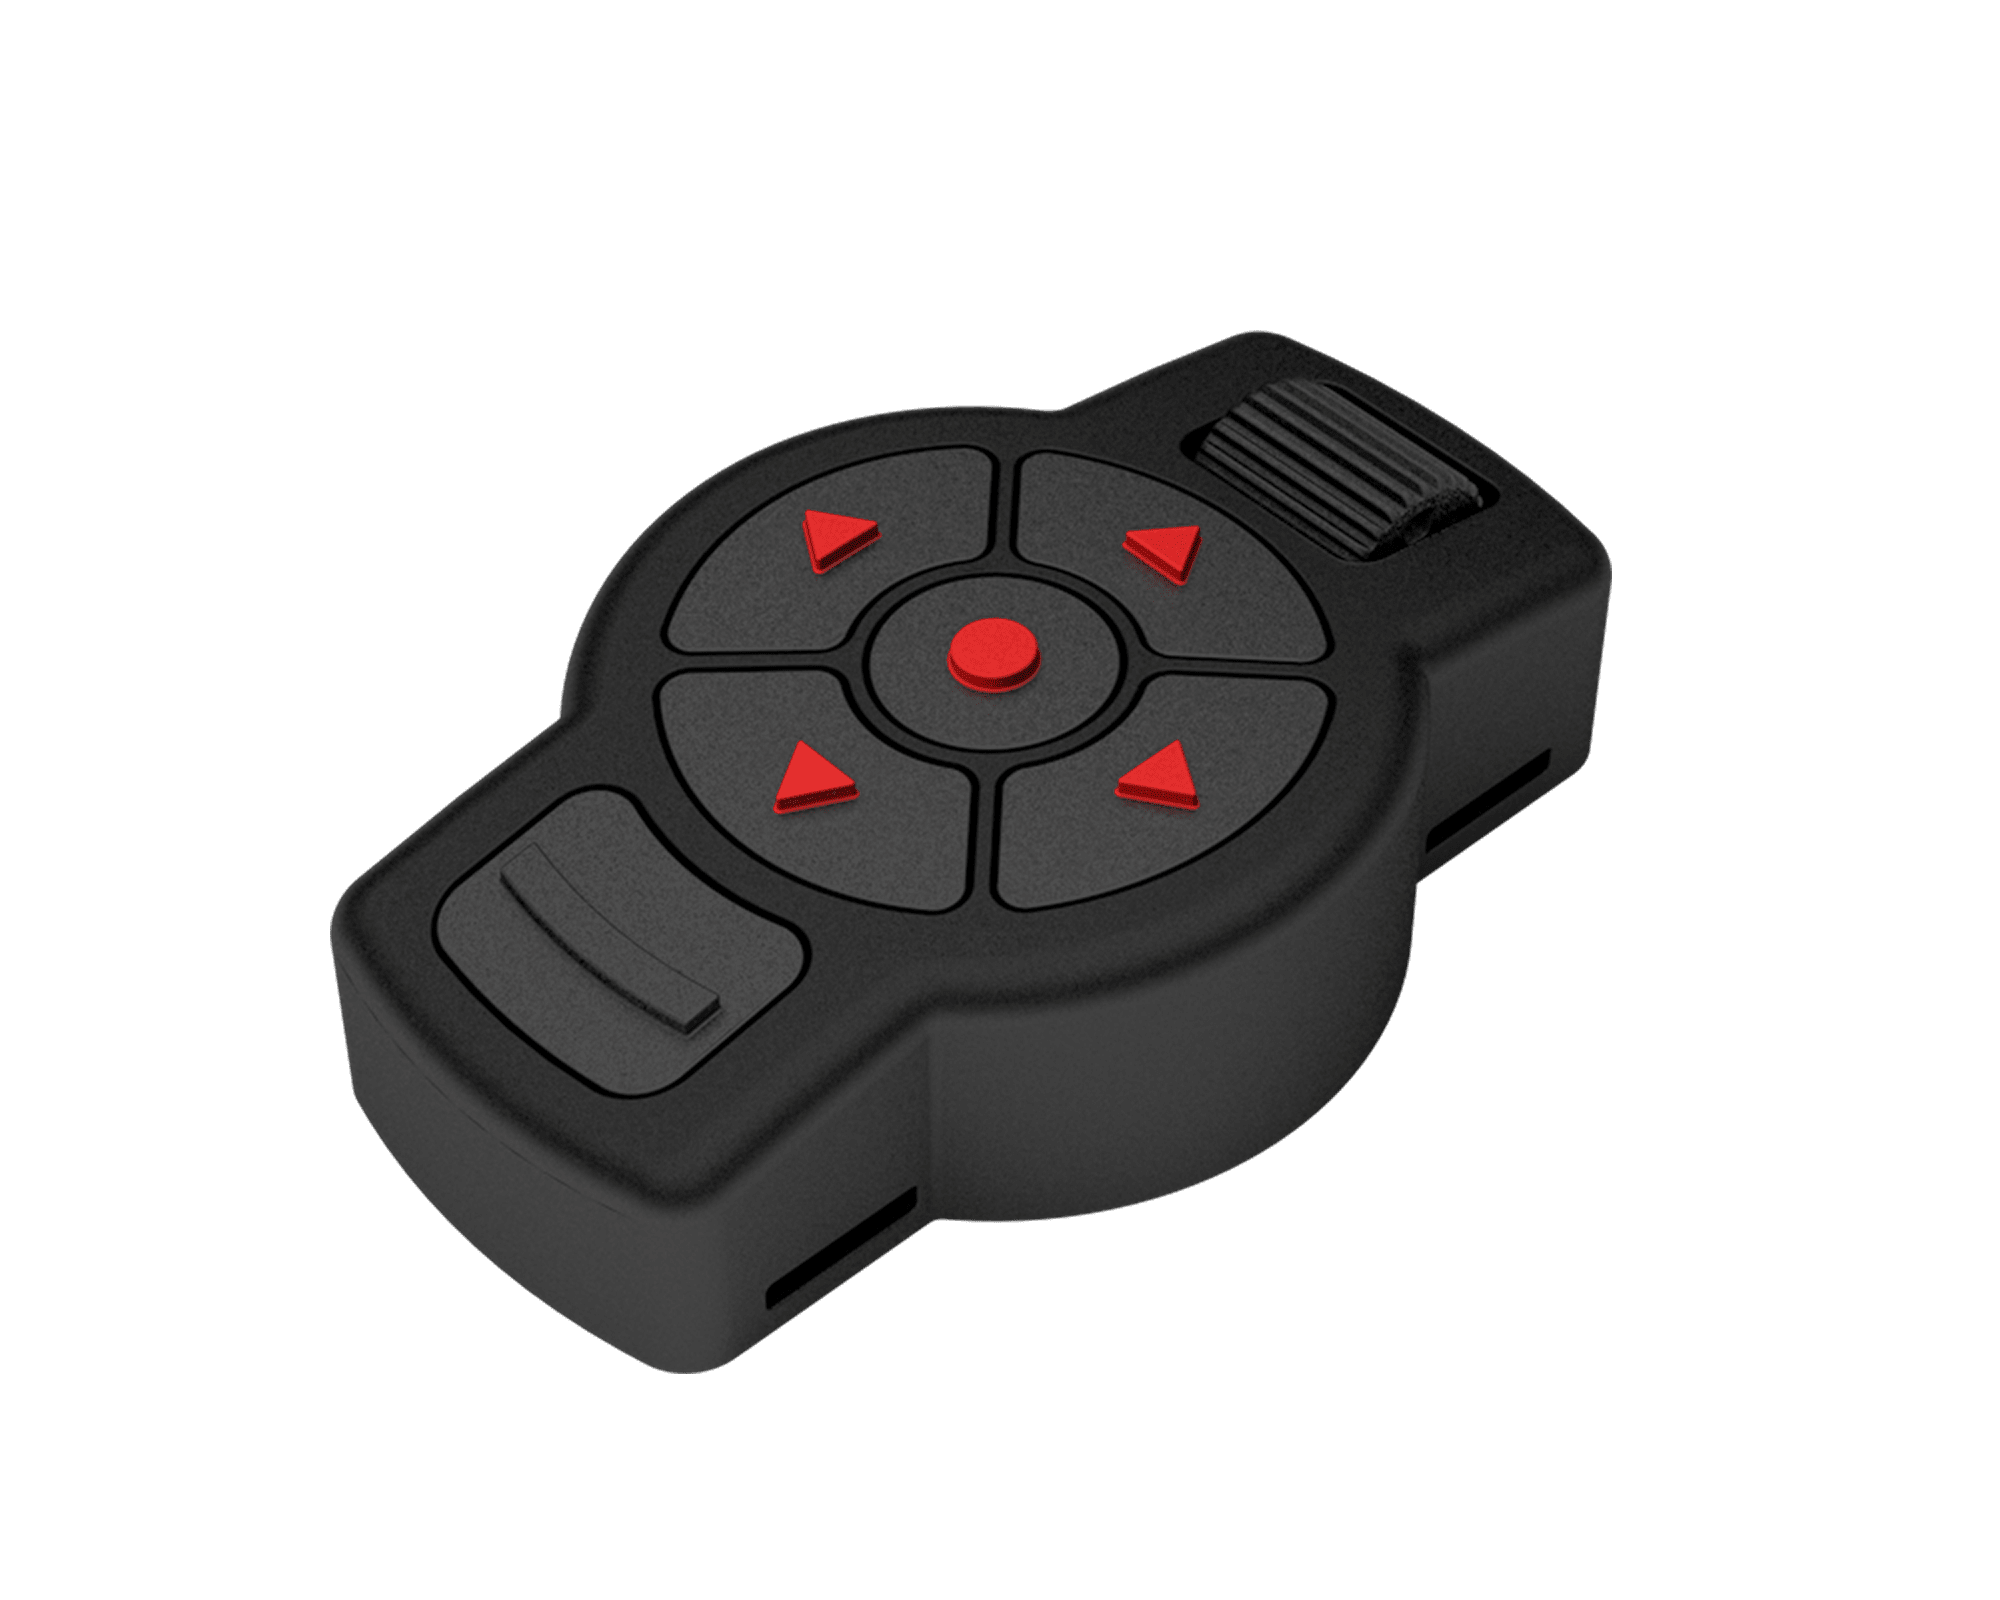 x-trac scopes remote control